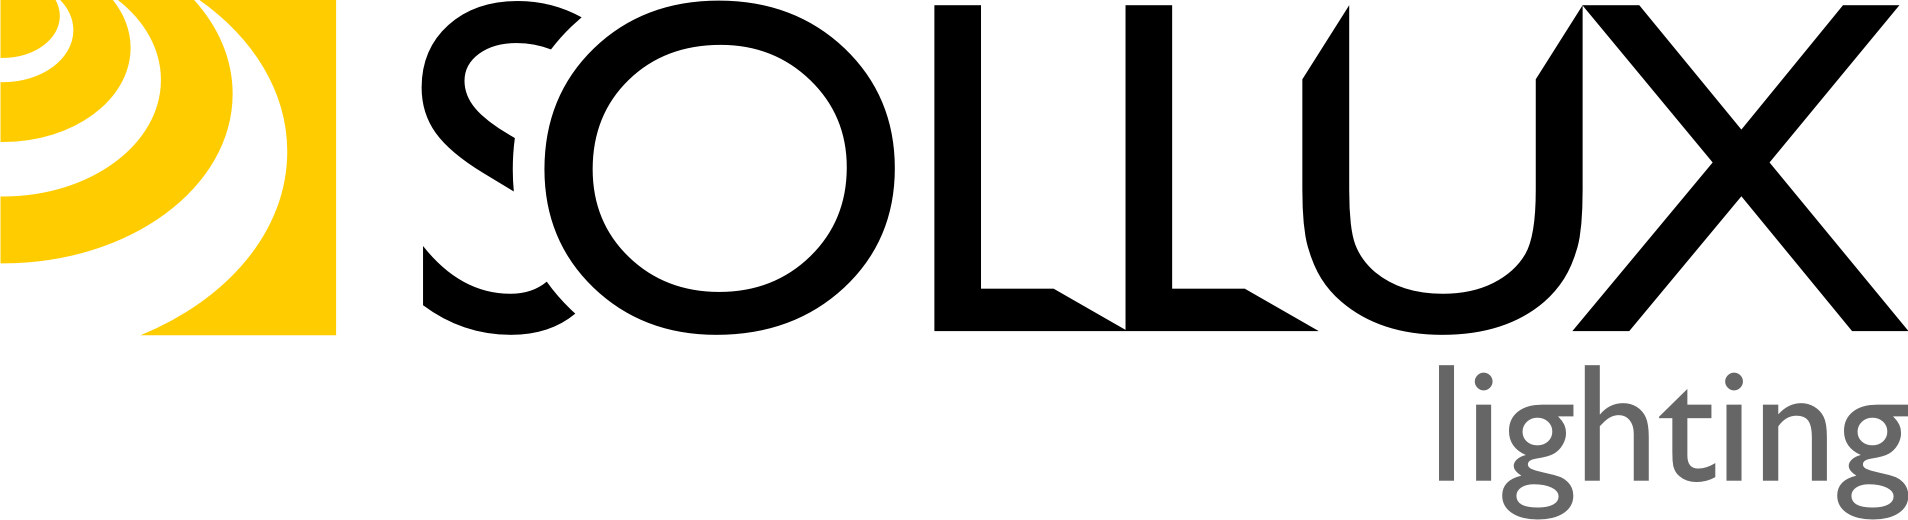 Sollux Lighting | Ihr Onlineshop rund um das Thema Lampen, Leuchtmittel und